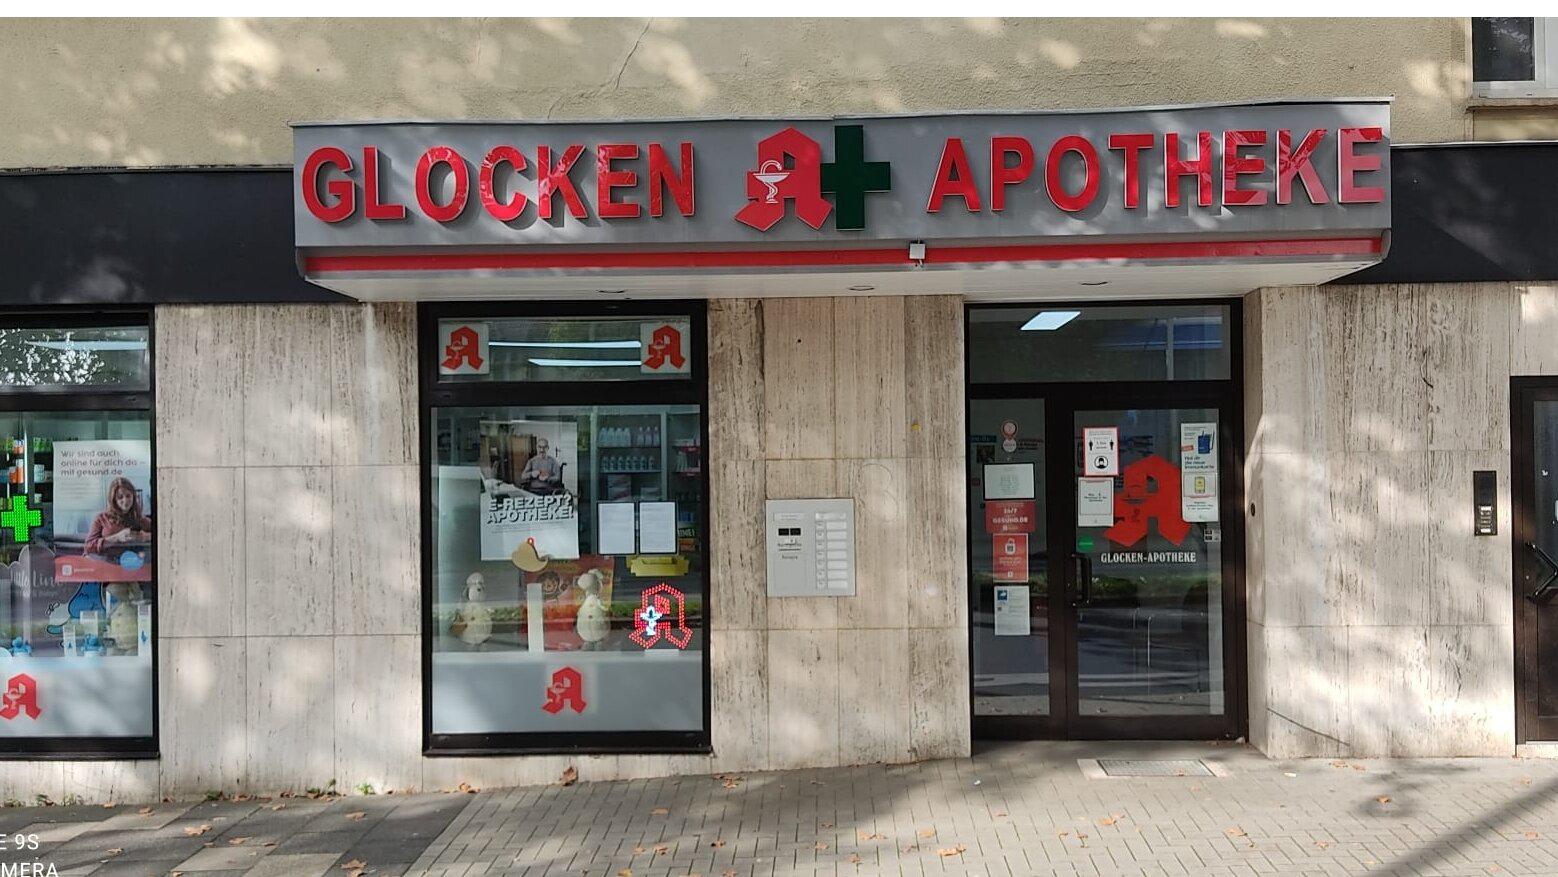 Glocken-Apotheke, Bessemerstraße 2 in Bochum